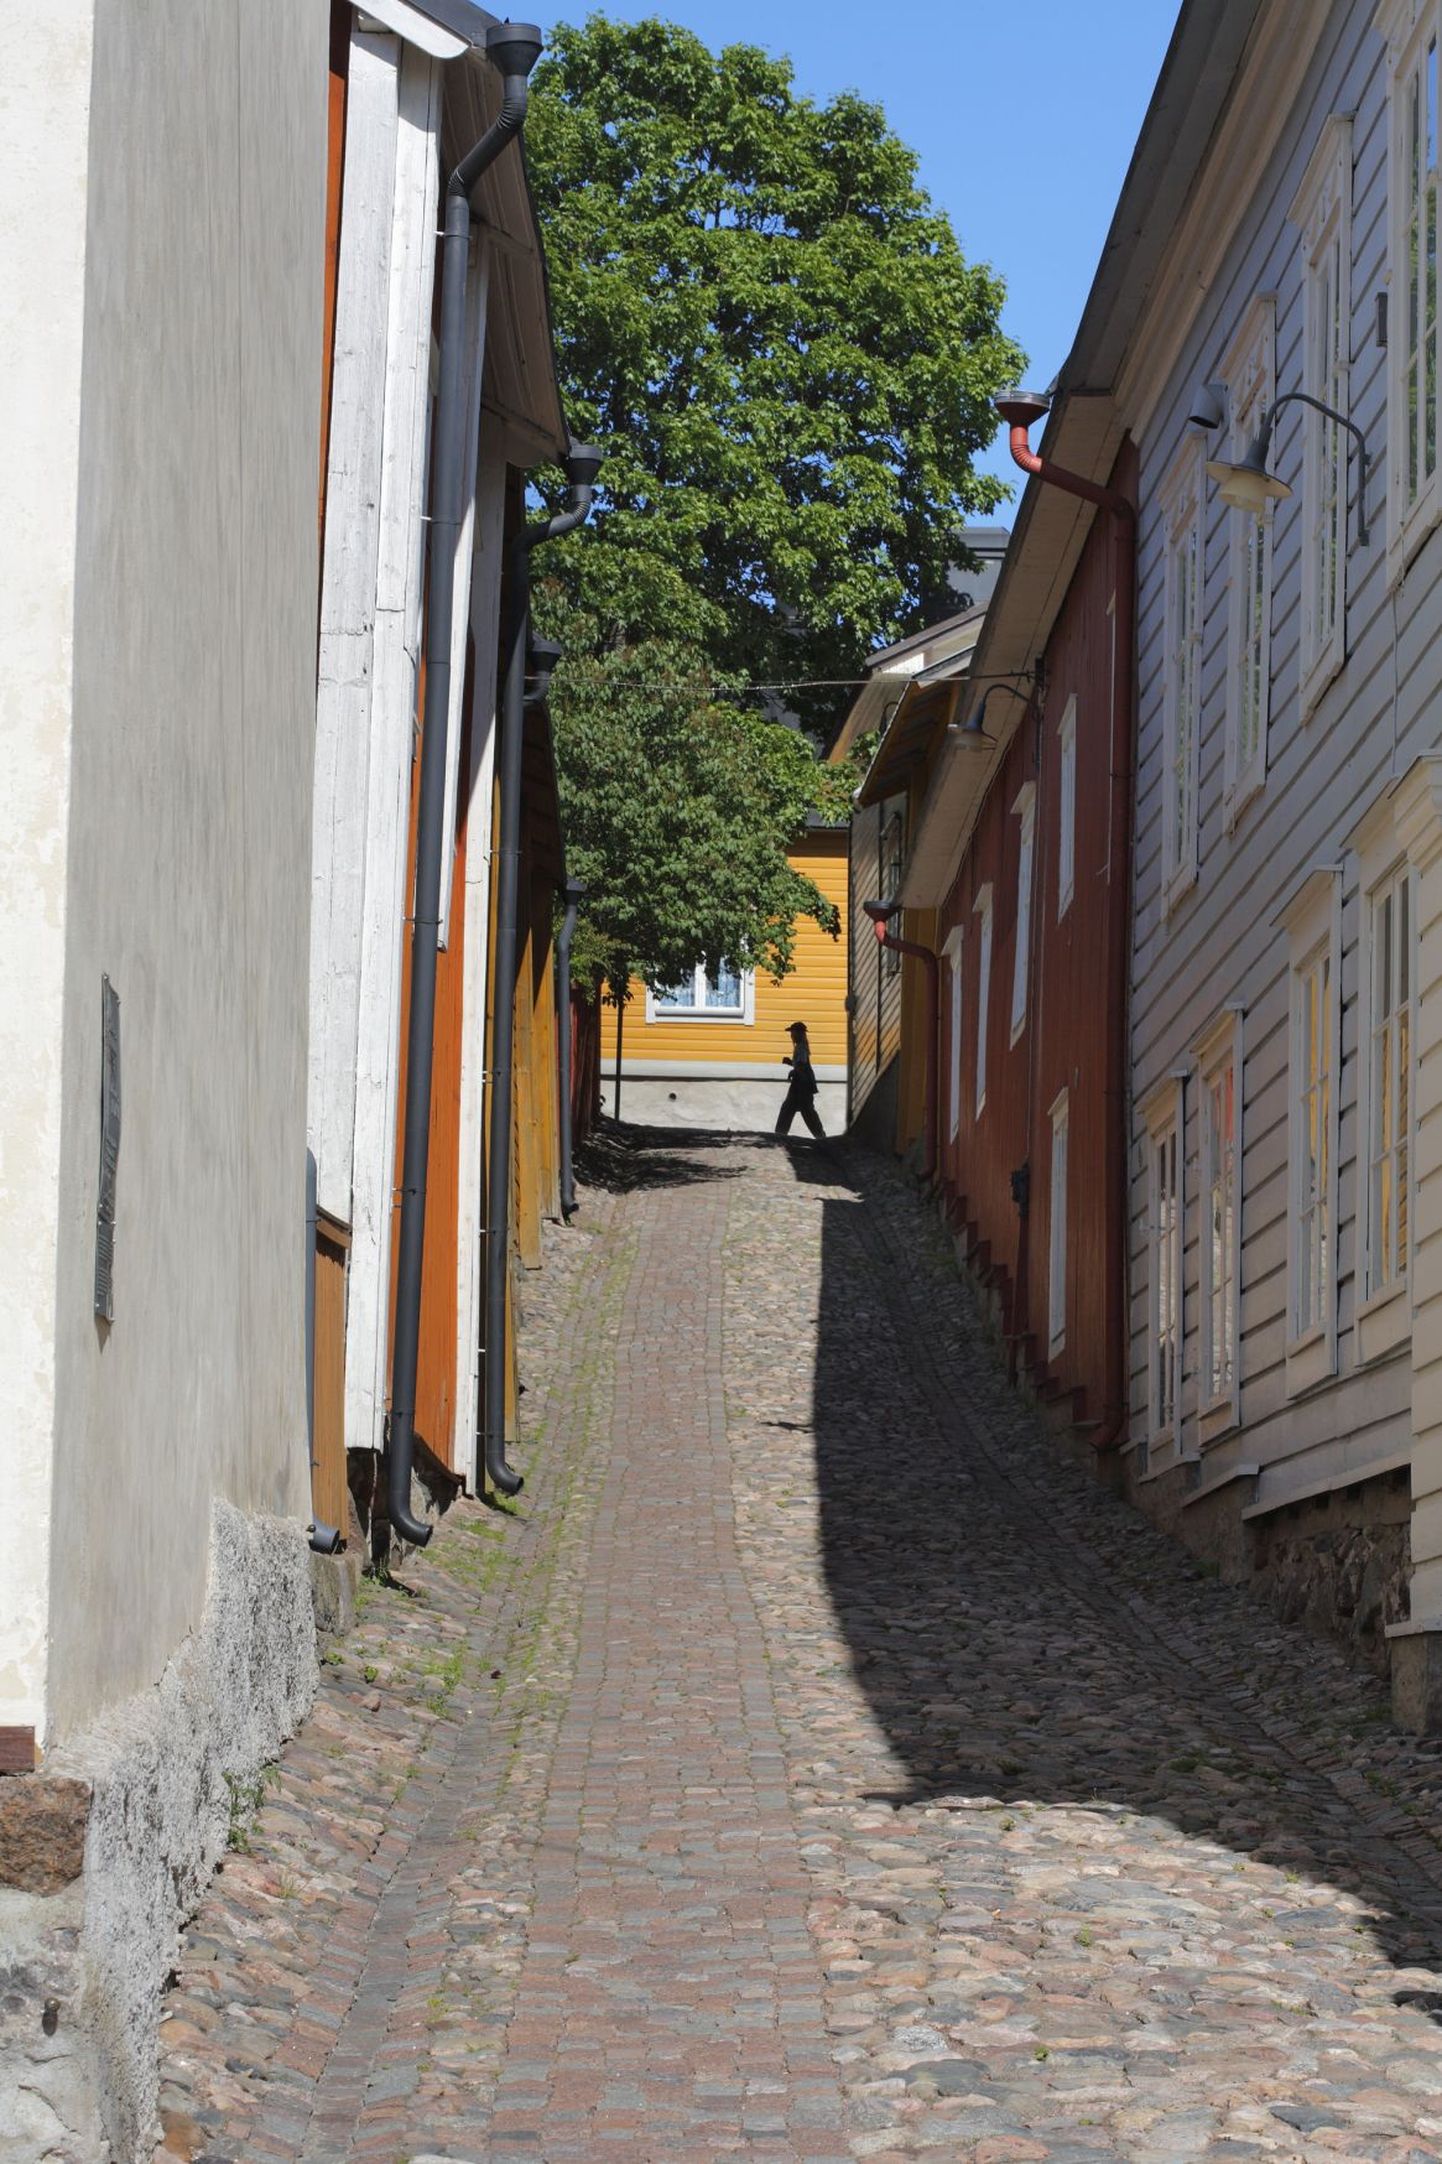 Vana kitsas tänav Porvoo linnas.